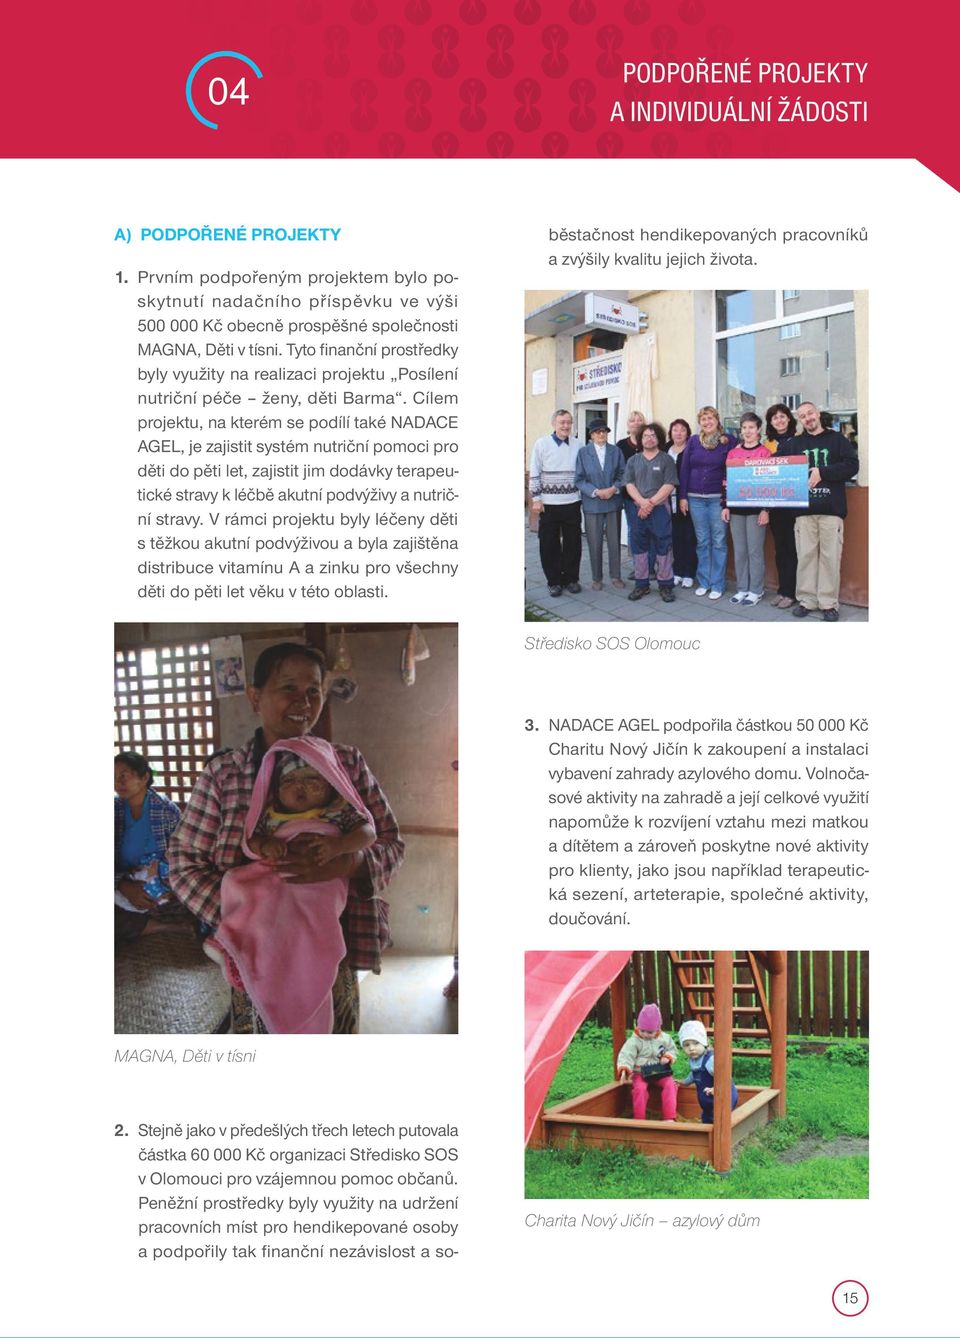 Tyto finanční prostředky byly využity na realizaci projektu Posílení nutriční péče ženy, děti Barma.